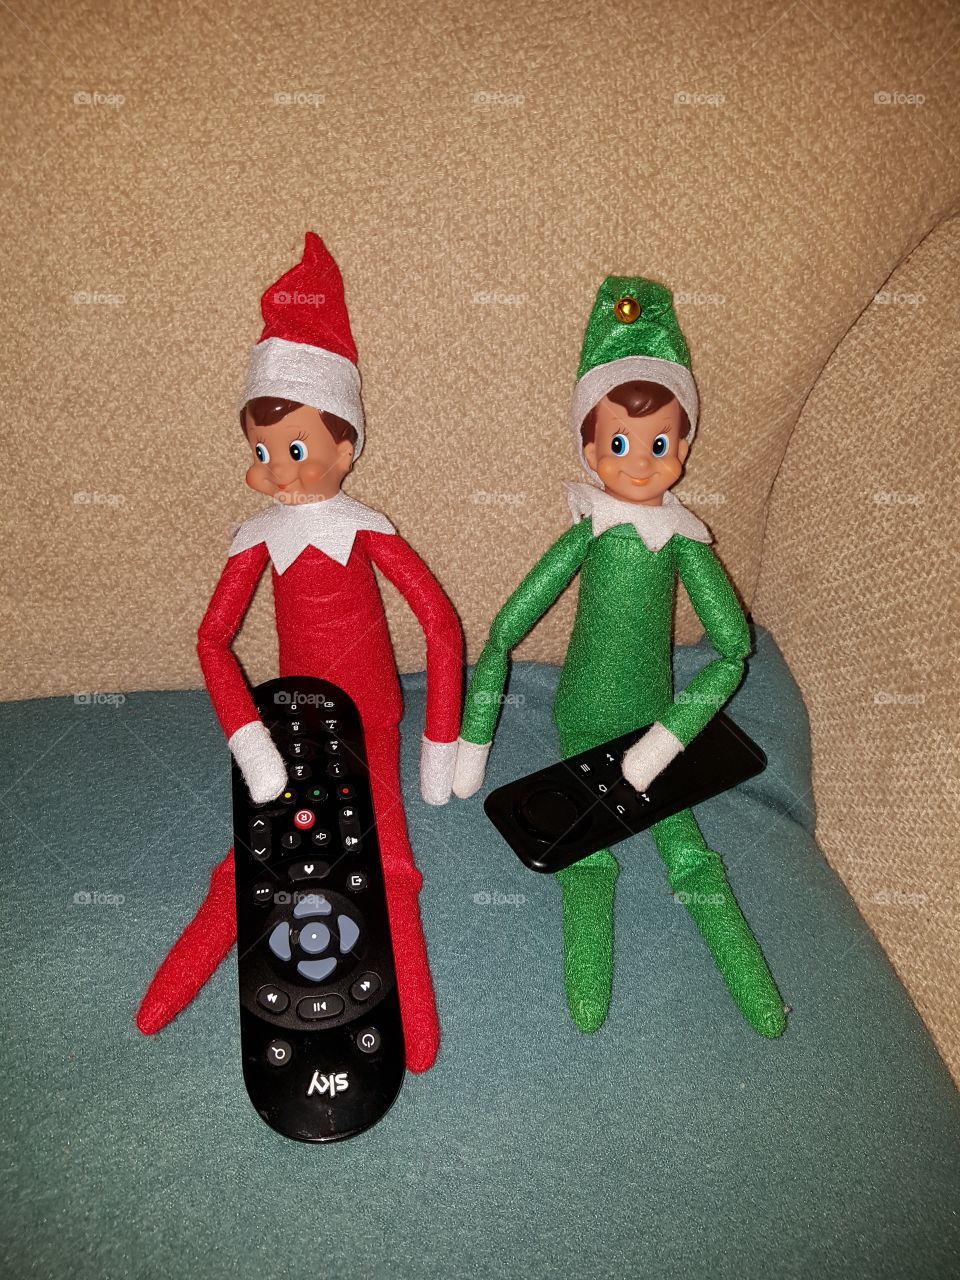 2 naughty elves not on their shelf